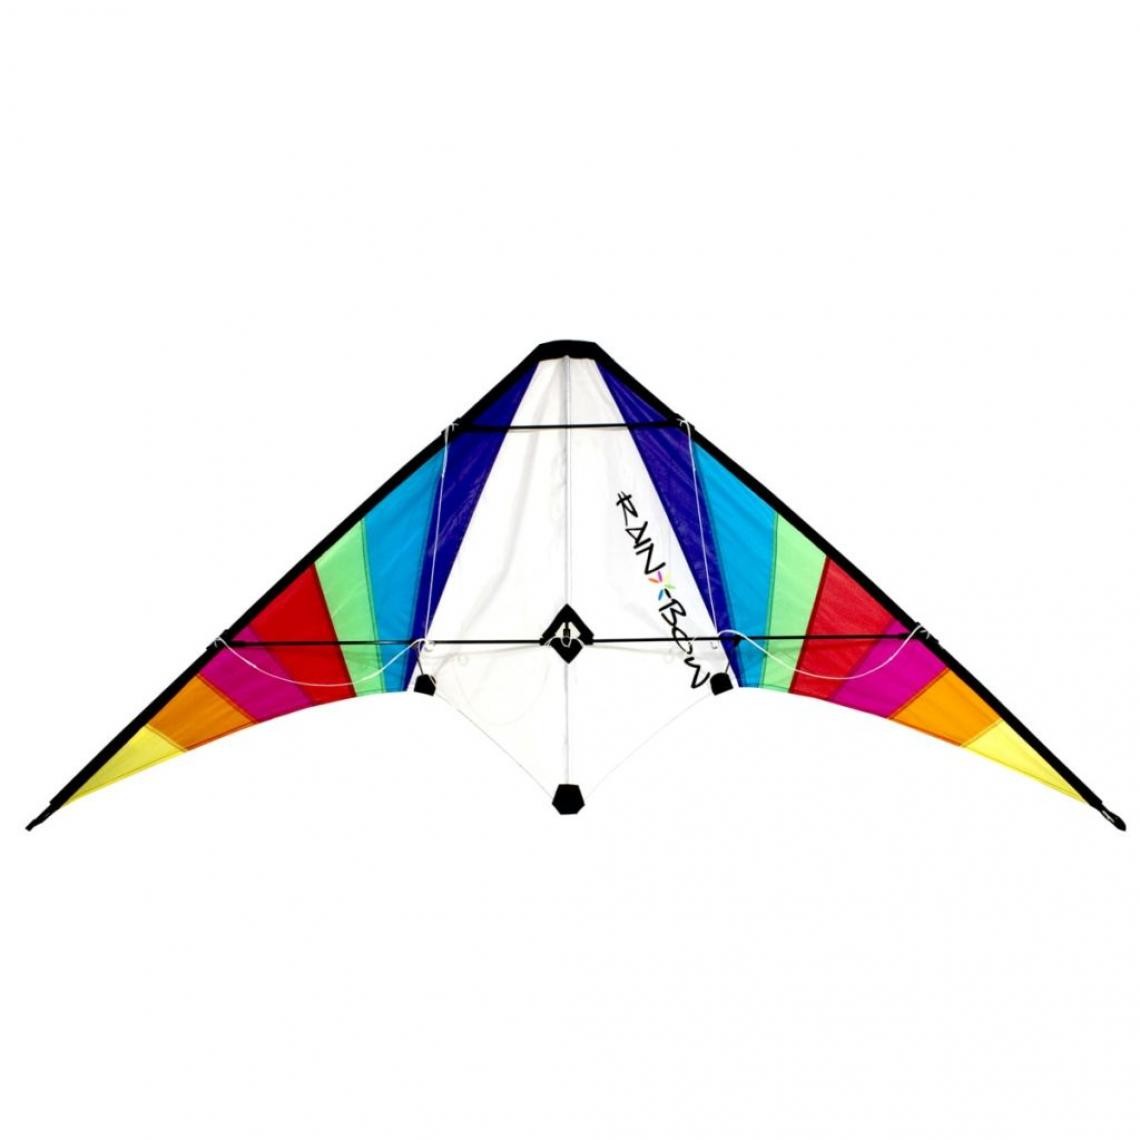 Rhombus - RHOMBUS Cerf-volant acrobatique design arc-en-ciel - Jeux d'adresse